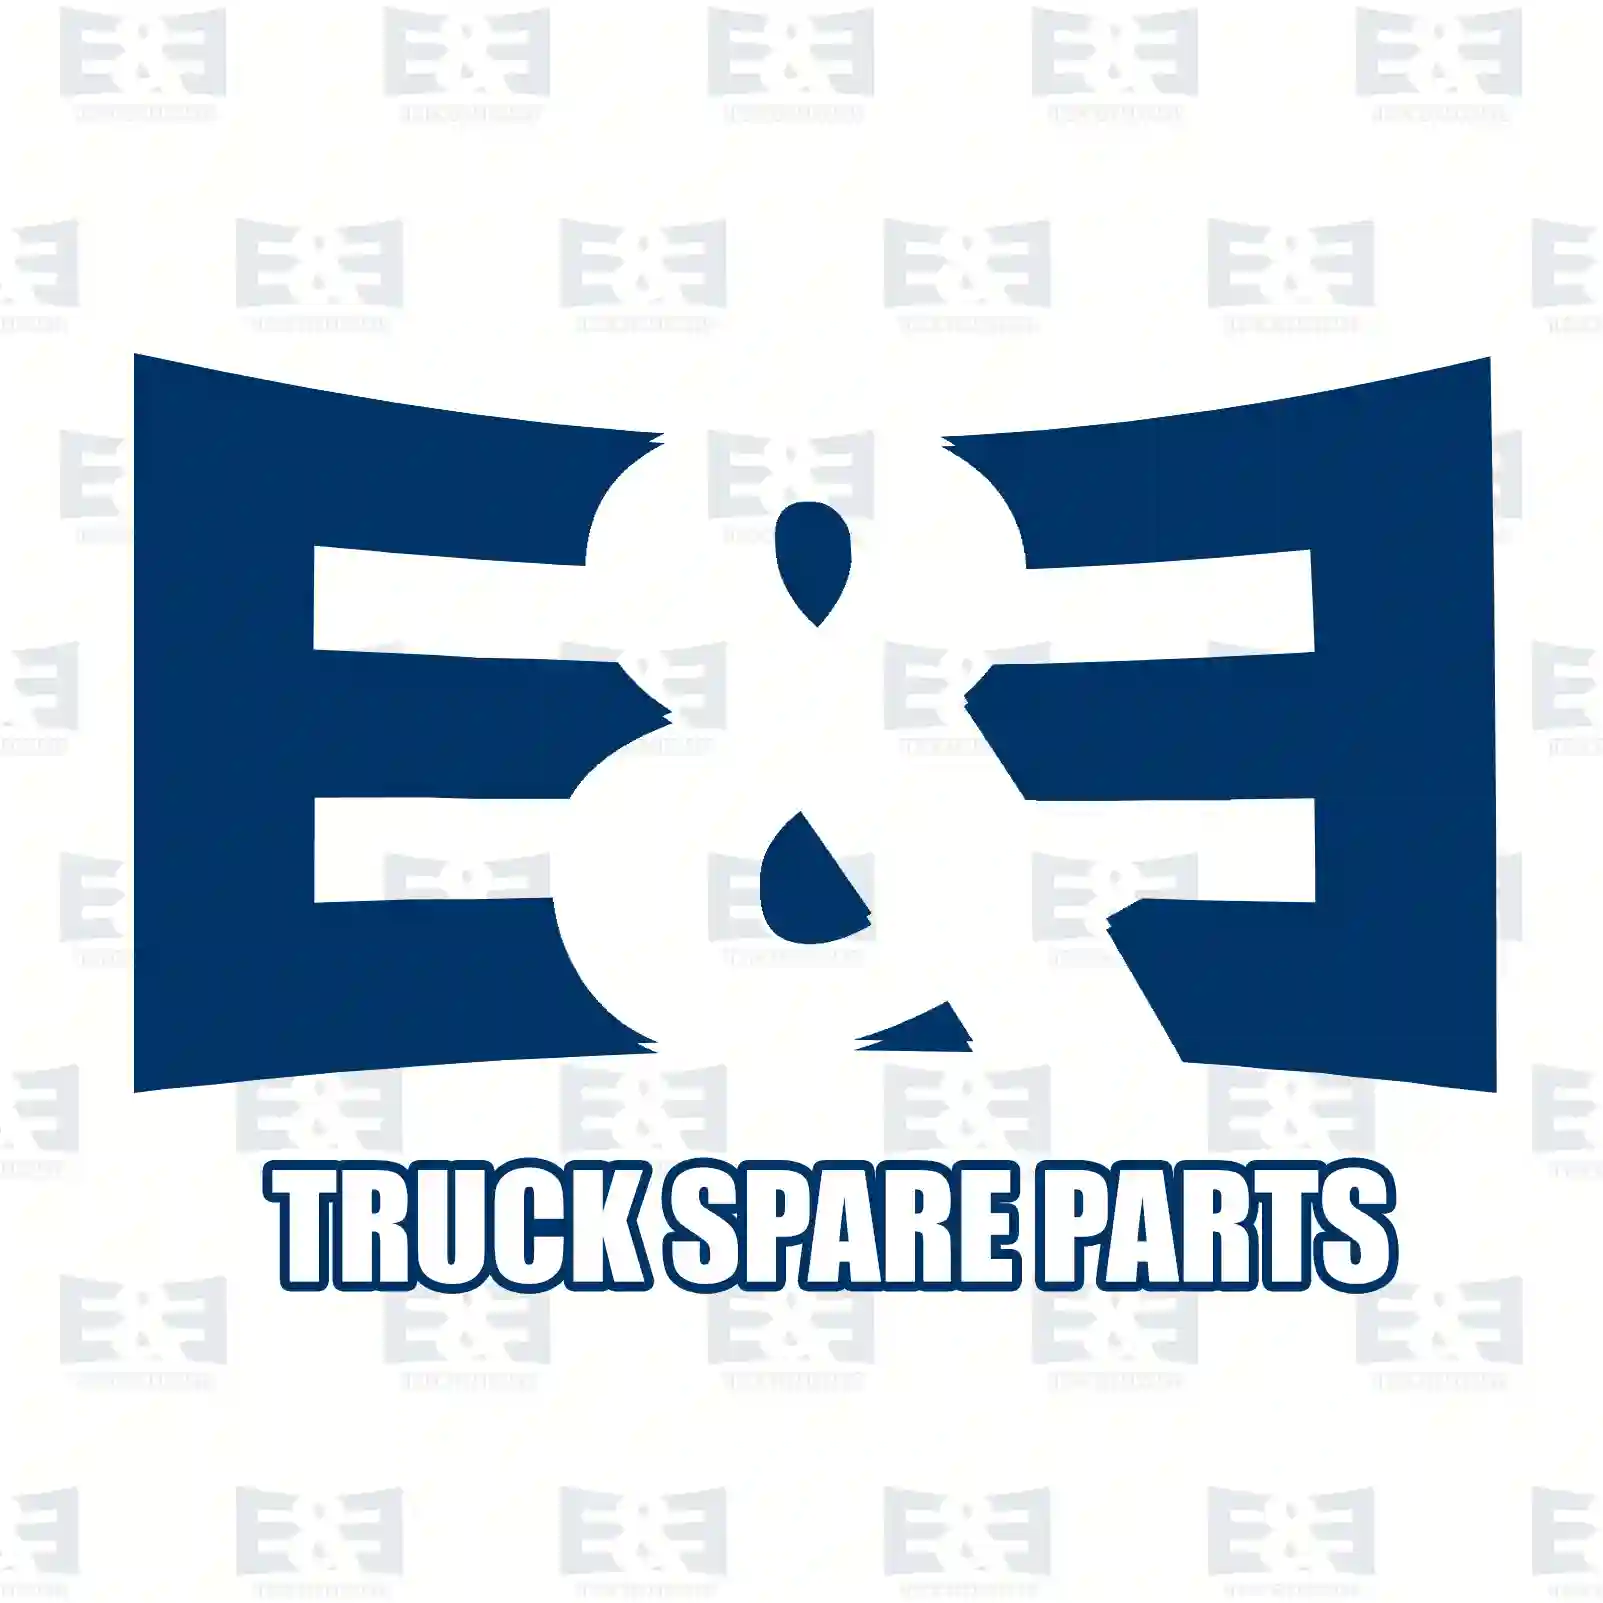 Step well case, right, 2E2292282, 6416600101, 64166001017329, 64166001019135 ||  2E2292282 E&E Truck Spare Parts | Truck Spare Parts, Auotomotive Spare Parts Step well case, right, 2E2292282, 6416600101, 64166001017329, 64166001019135 ||  2E2292282 E&E Truck Spare Parts | Truck Spare Parts, Auotomotive Spare Parts